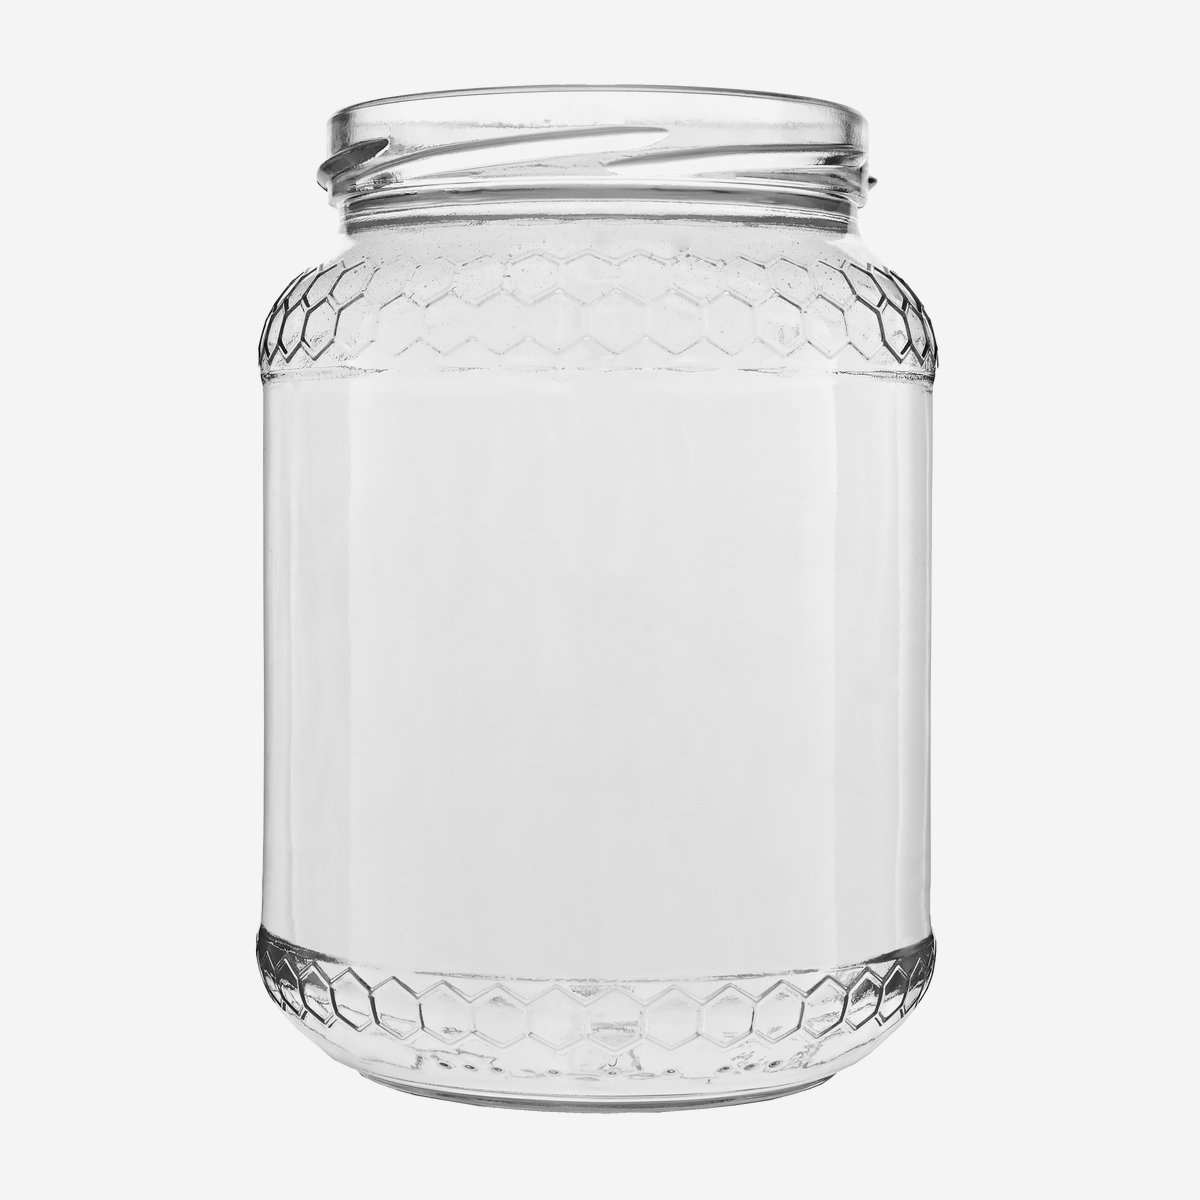 Honigglas Euro 770ml, Mündung / Gläser online bestellen